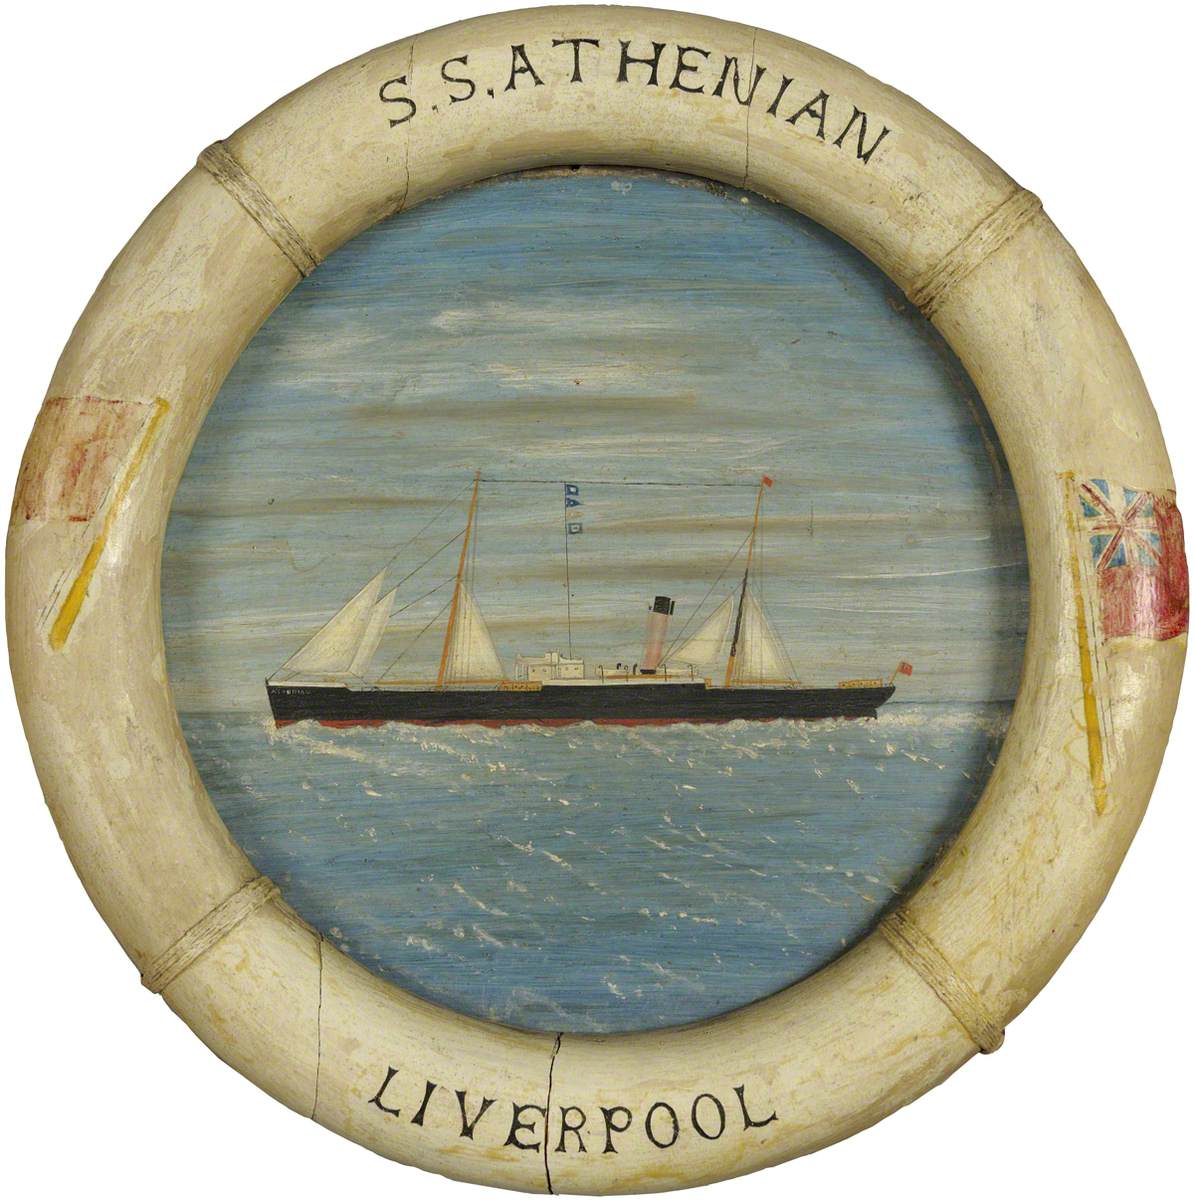 The Steamship 'Athenian'